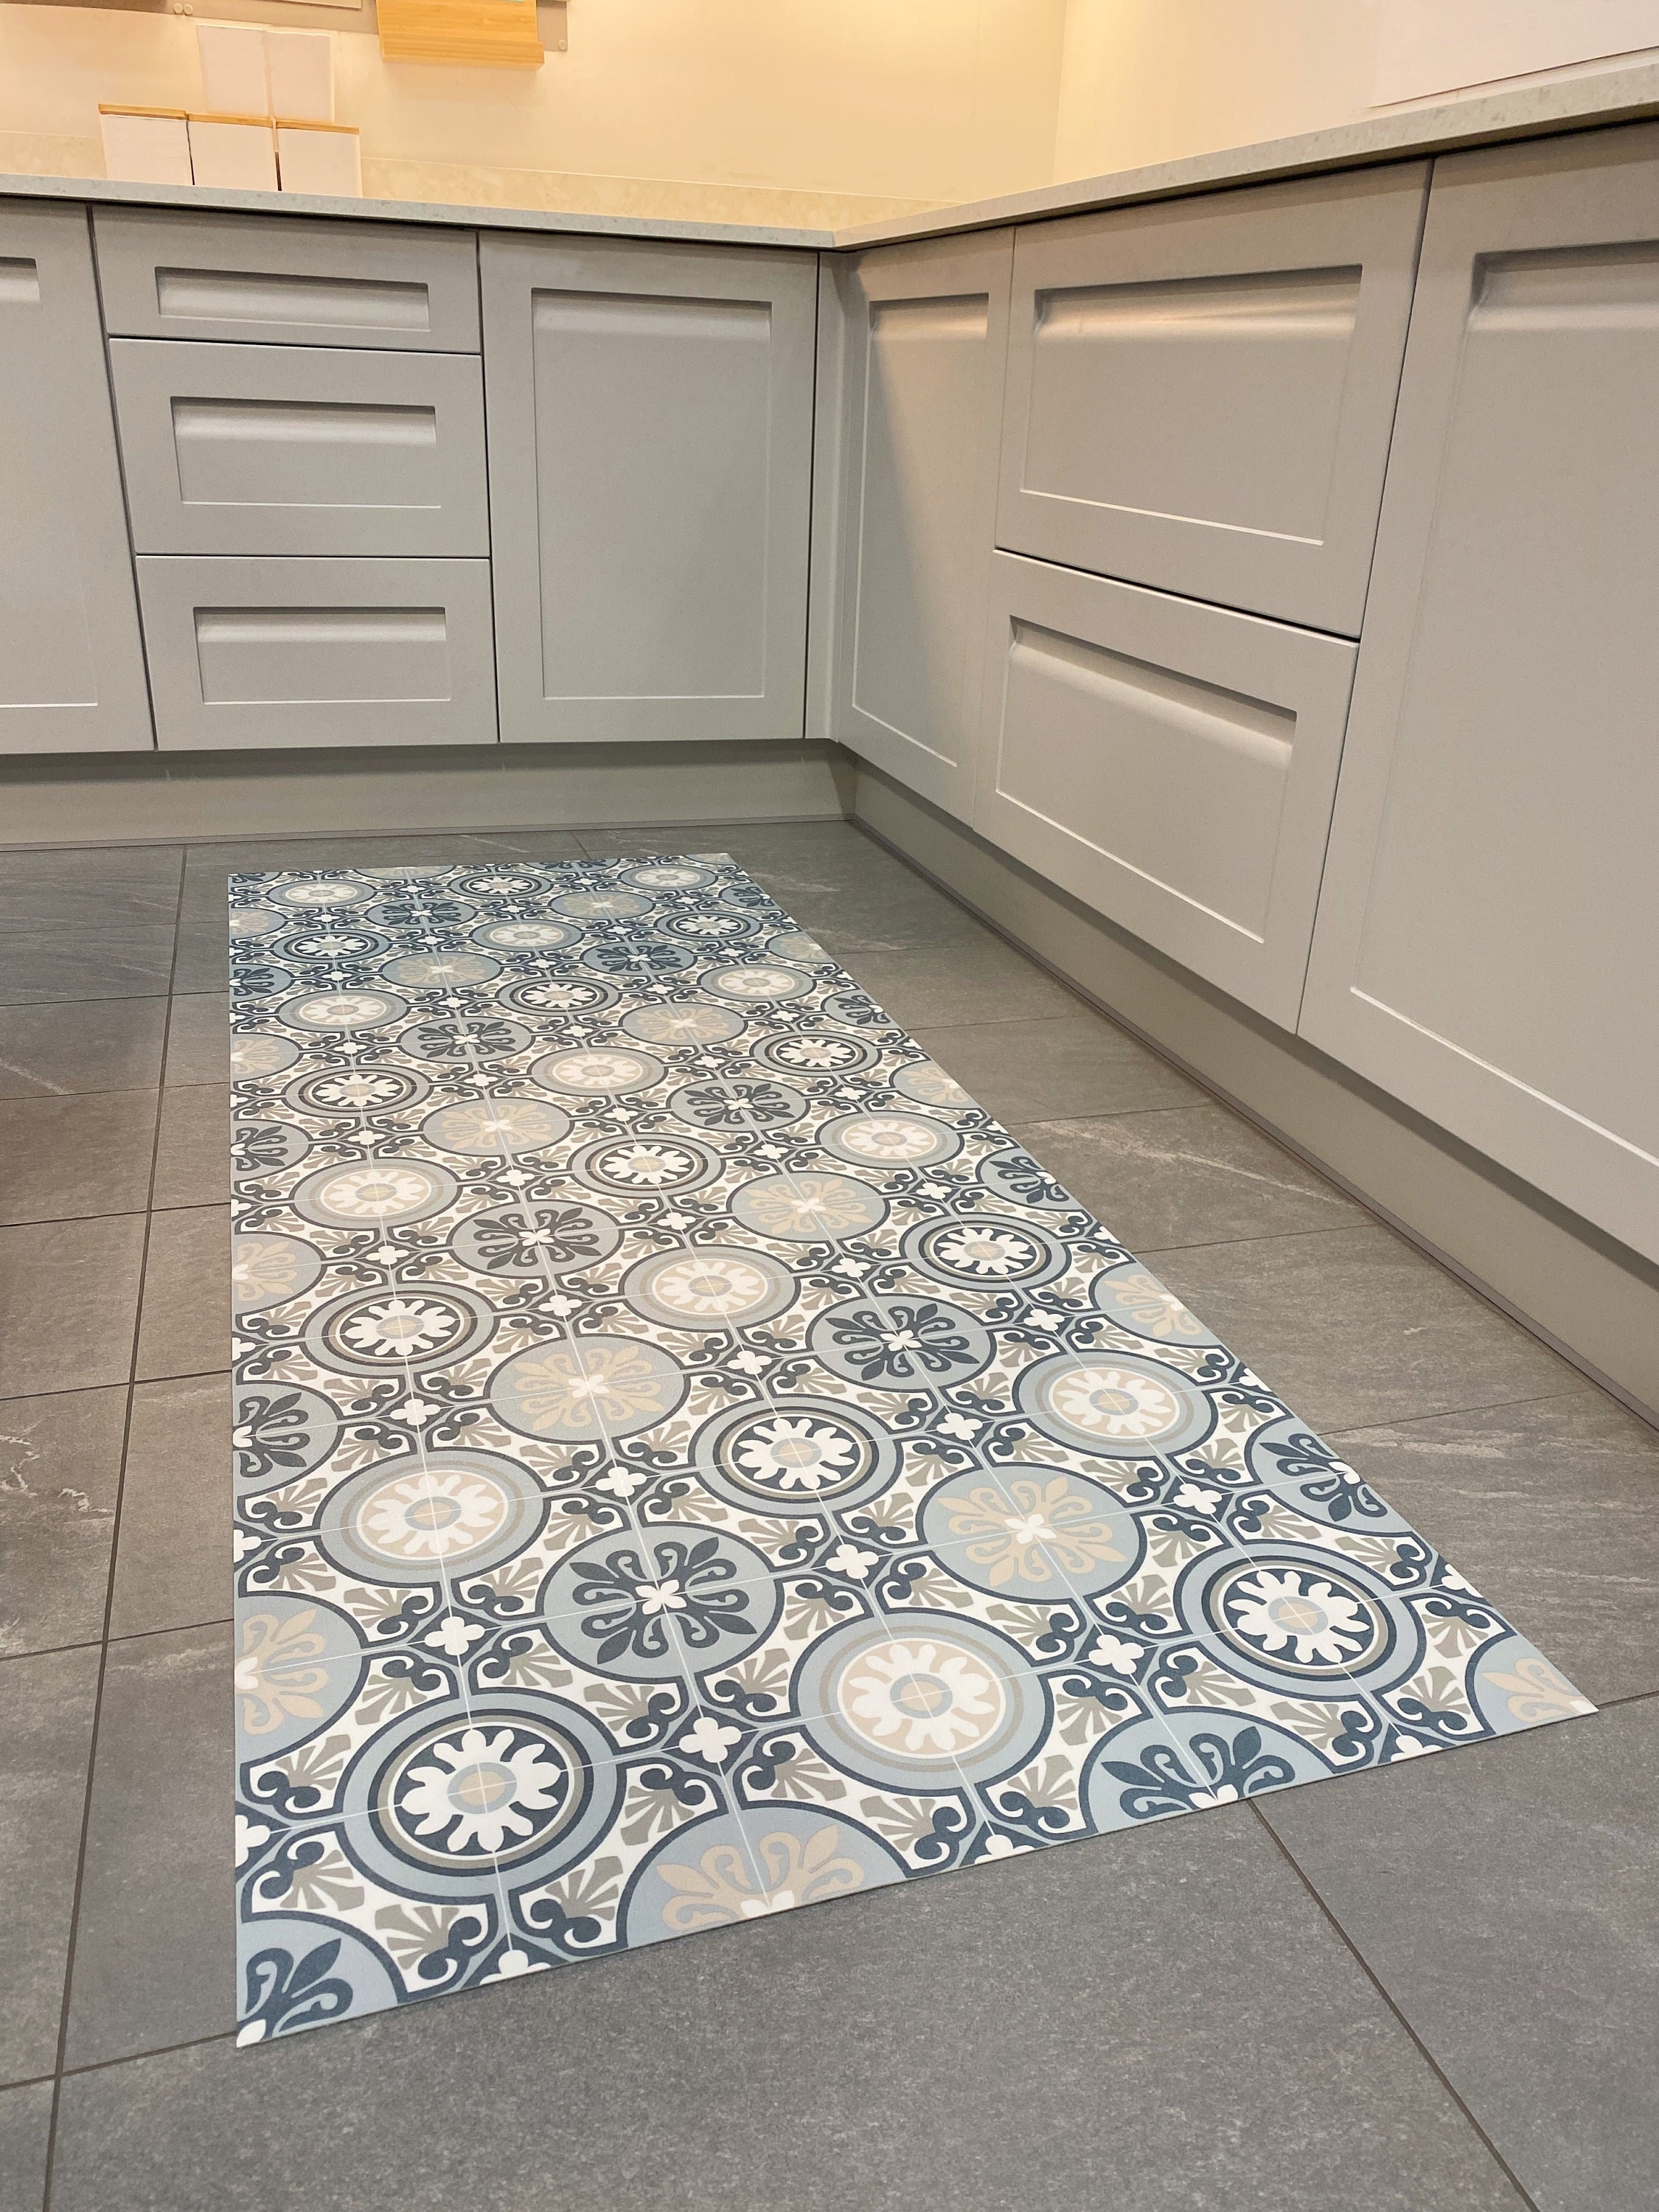 Alfombra de vinilo para cocina Ortigia, alfombrilla limpiable, alfombra de  vinilo marroquí, patrón con efecto azulejo para suelos de cocina, pasillo y  baño -  México